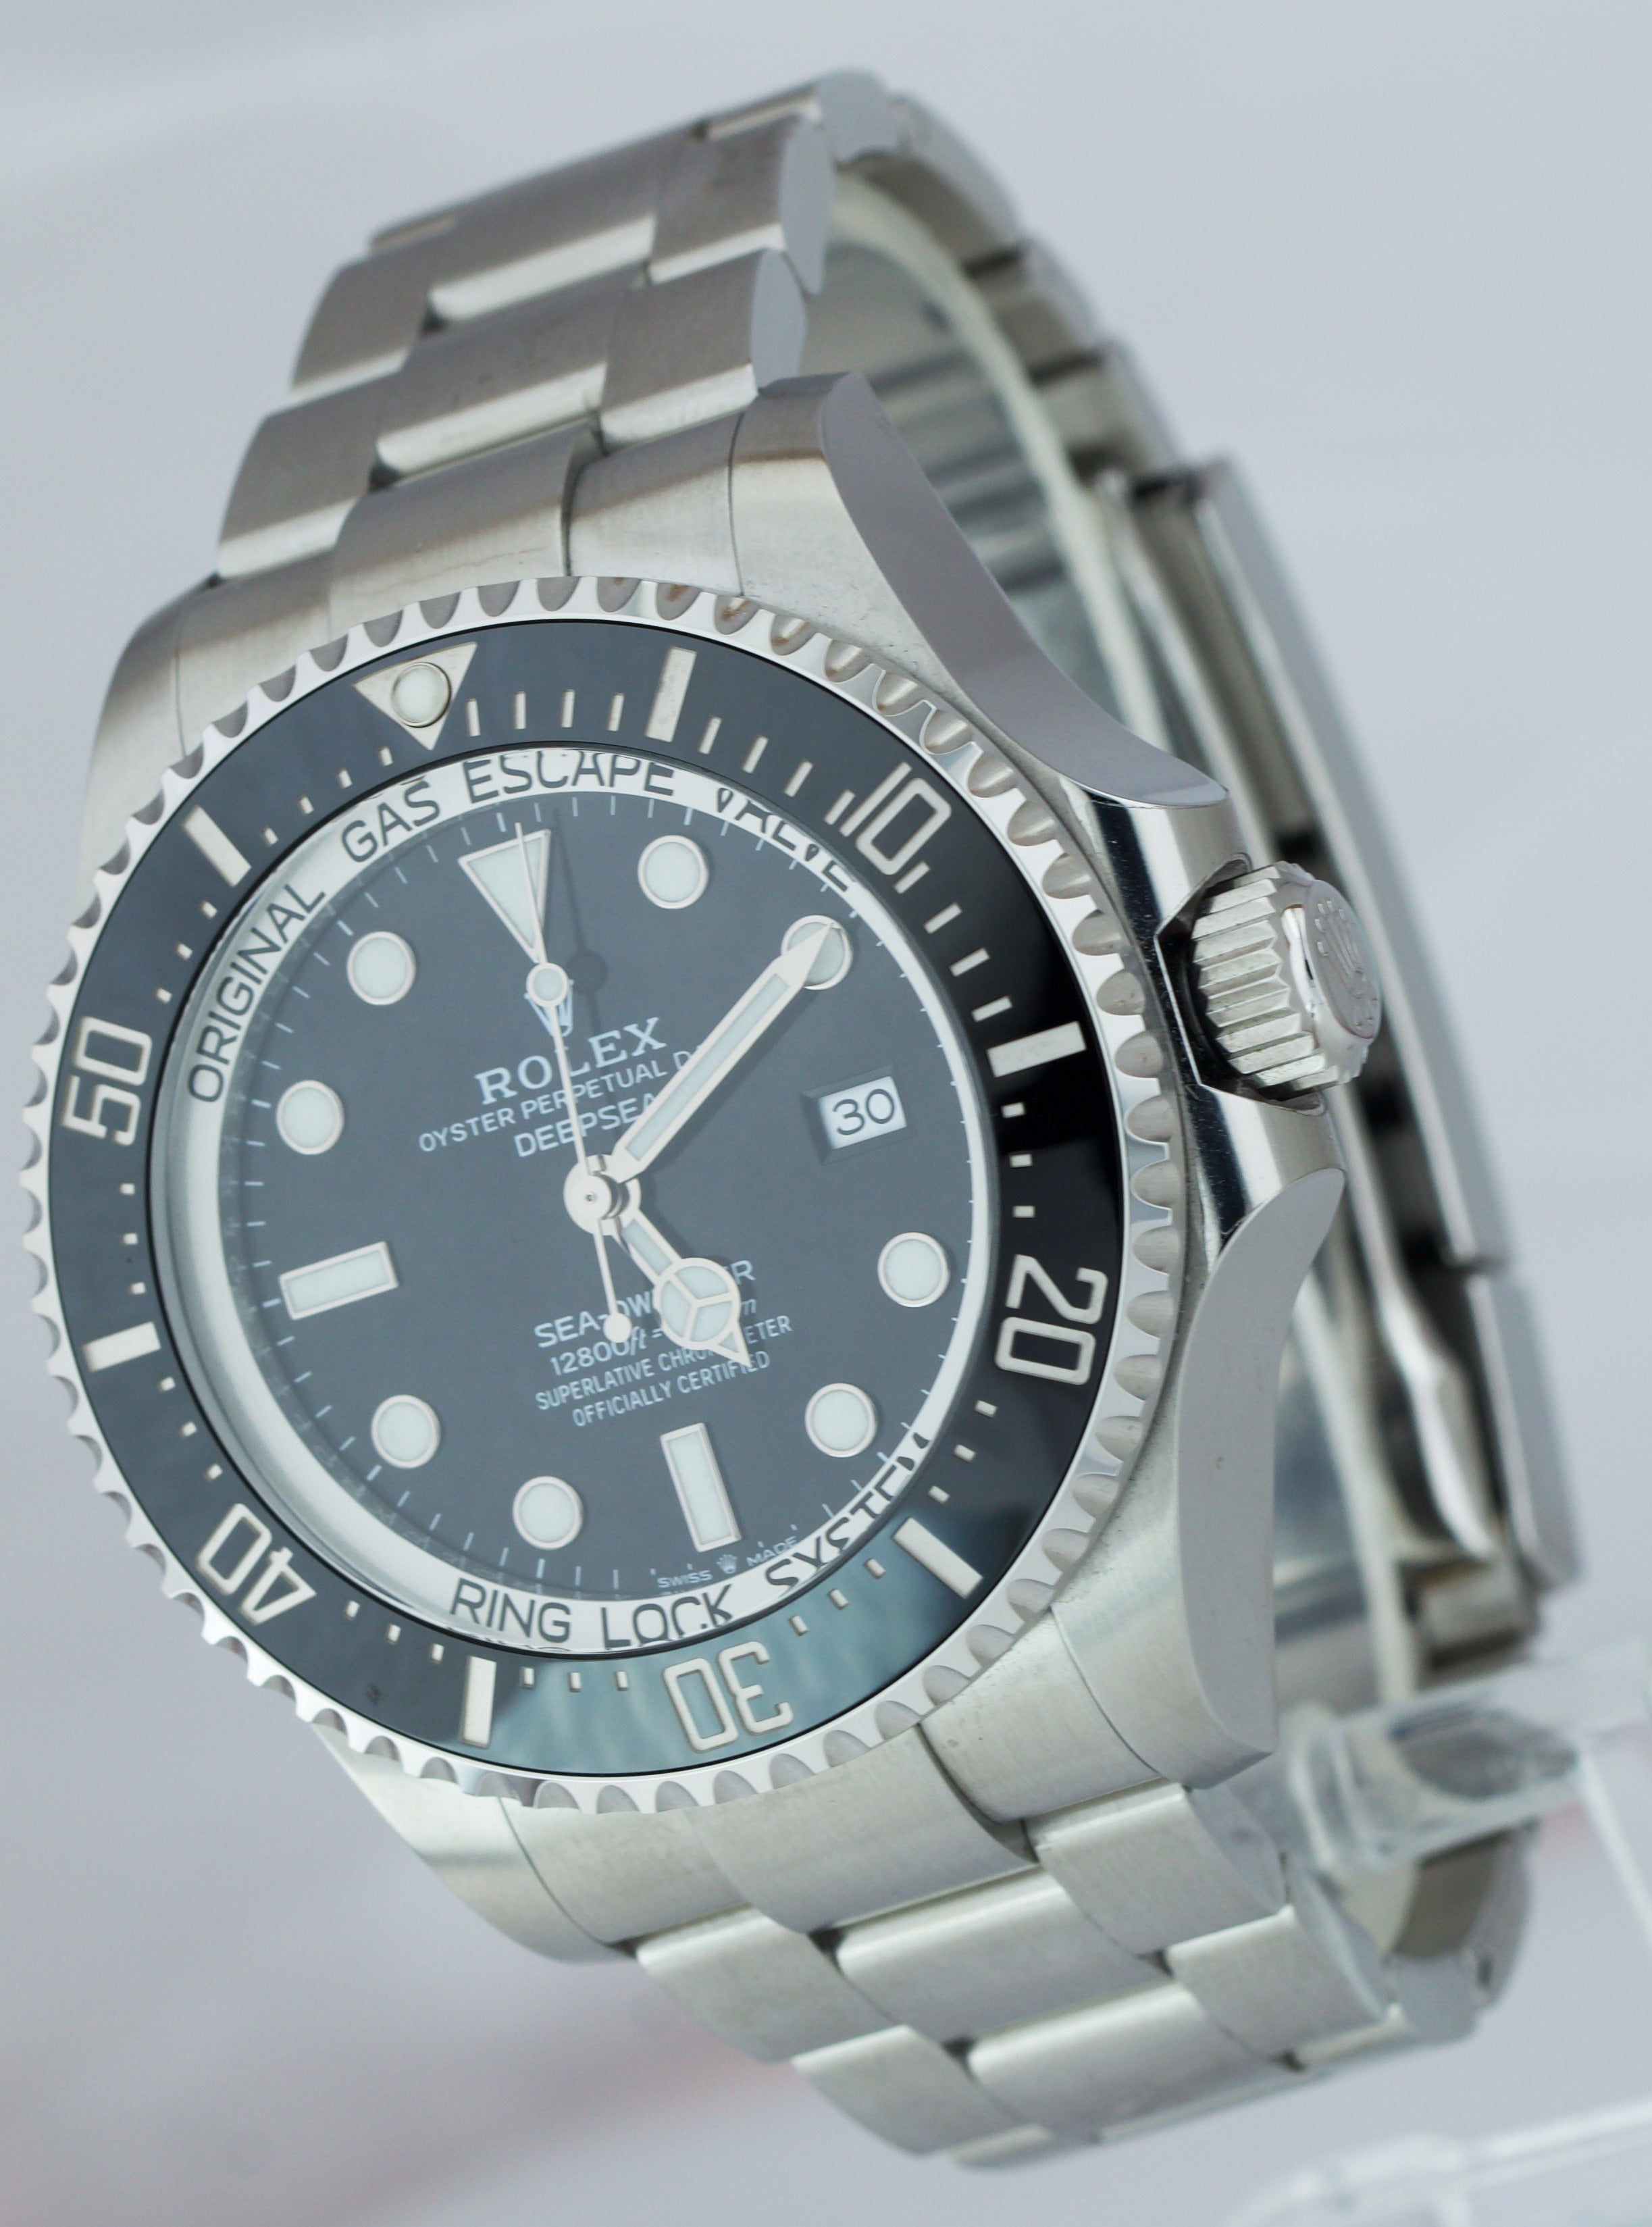 2019 MINT Rolex Sea-Dweller Deepsea Black Stainless Steel 44mm Dive 126660 Watch